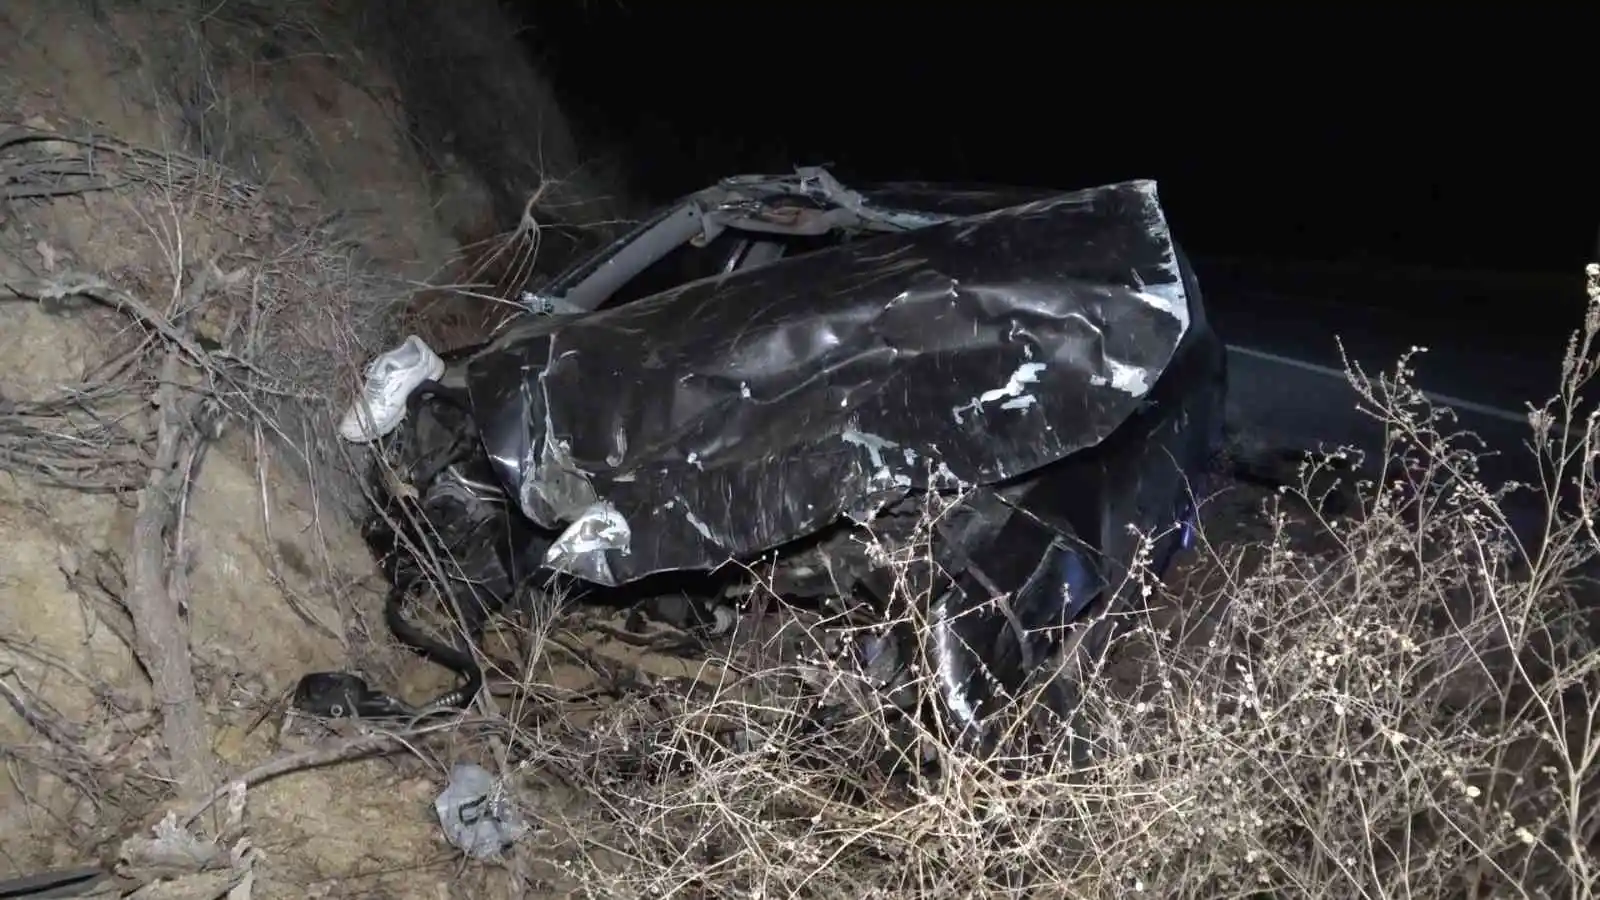 Takla atan otomobil 120 metre sürüklendi: Camdan fırlayan sürücü ağır yaralandı
